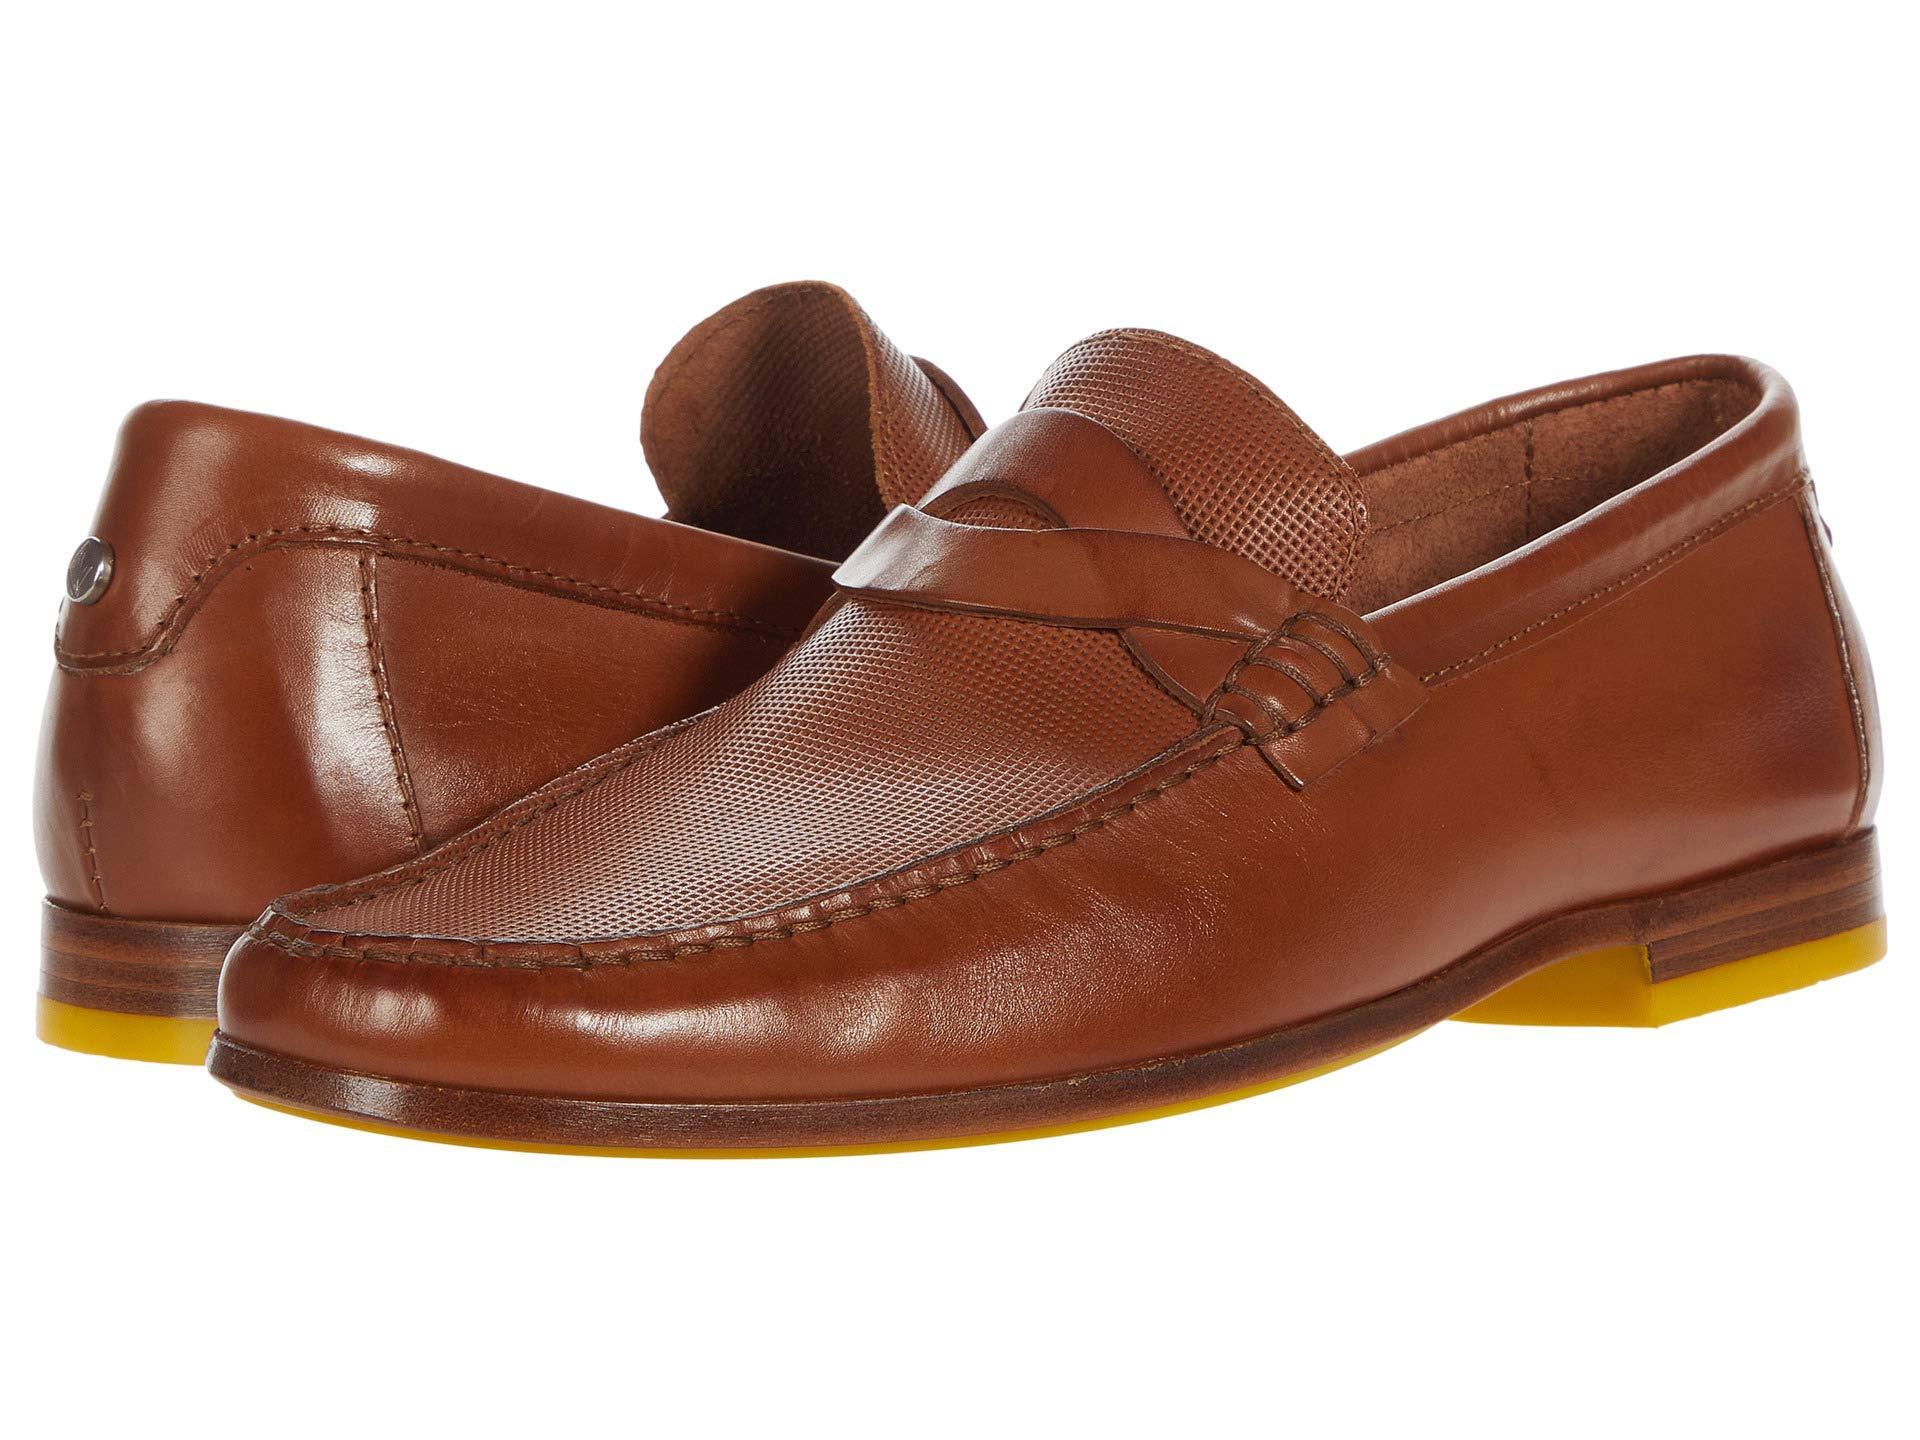 Donald J Pliner Leather Loafer in Cognac (Brown) for Men - Lyst